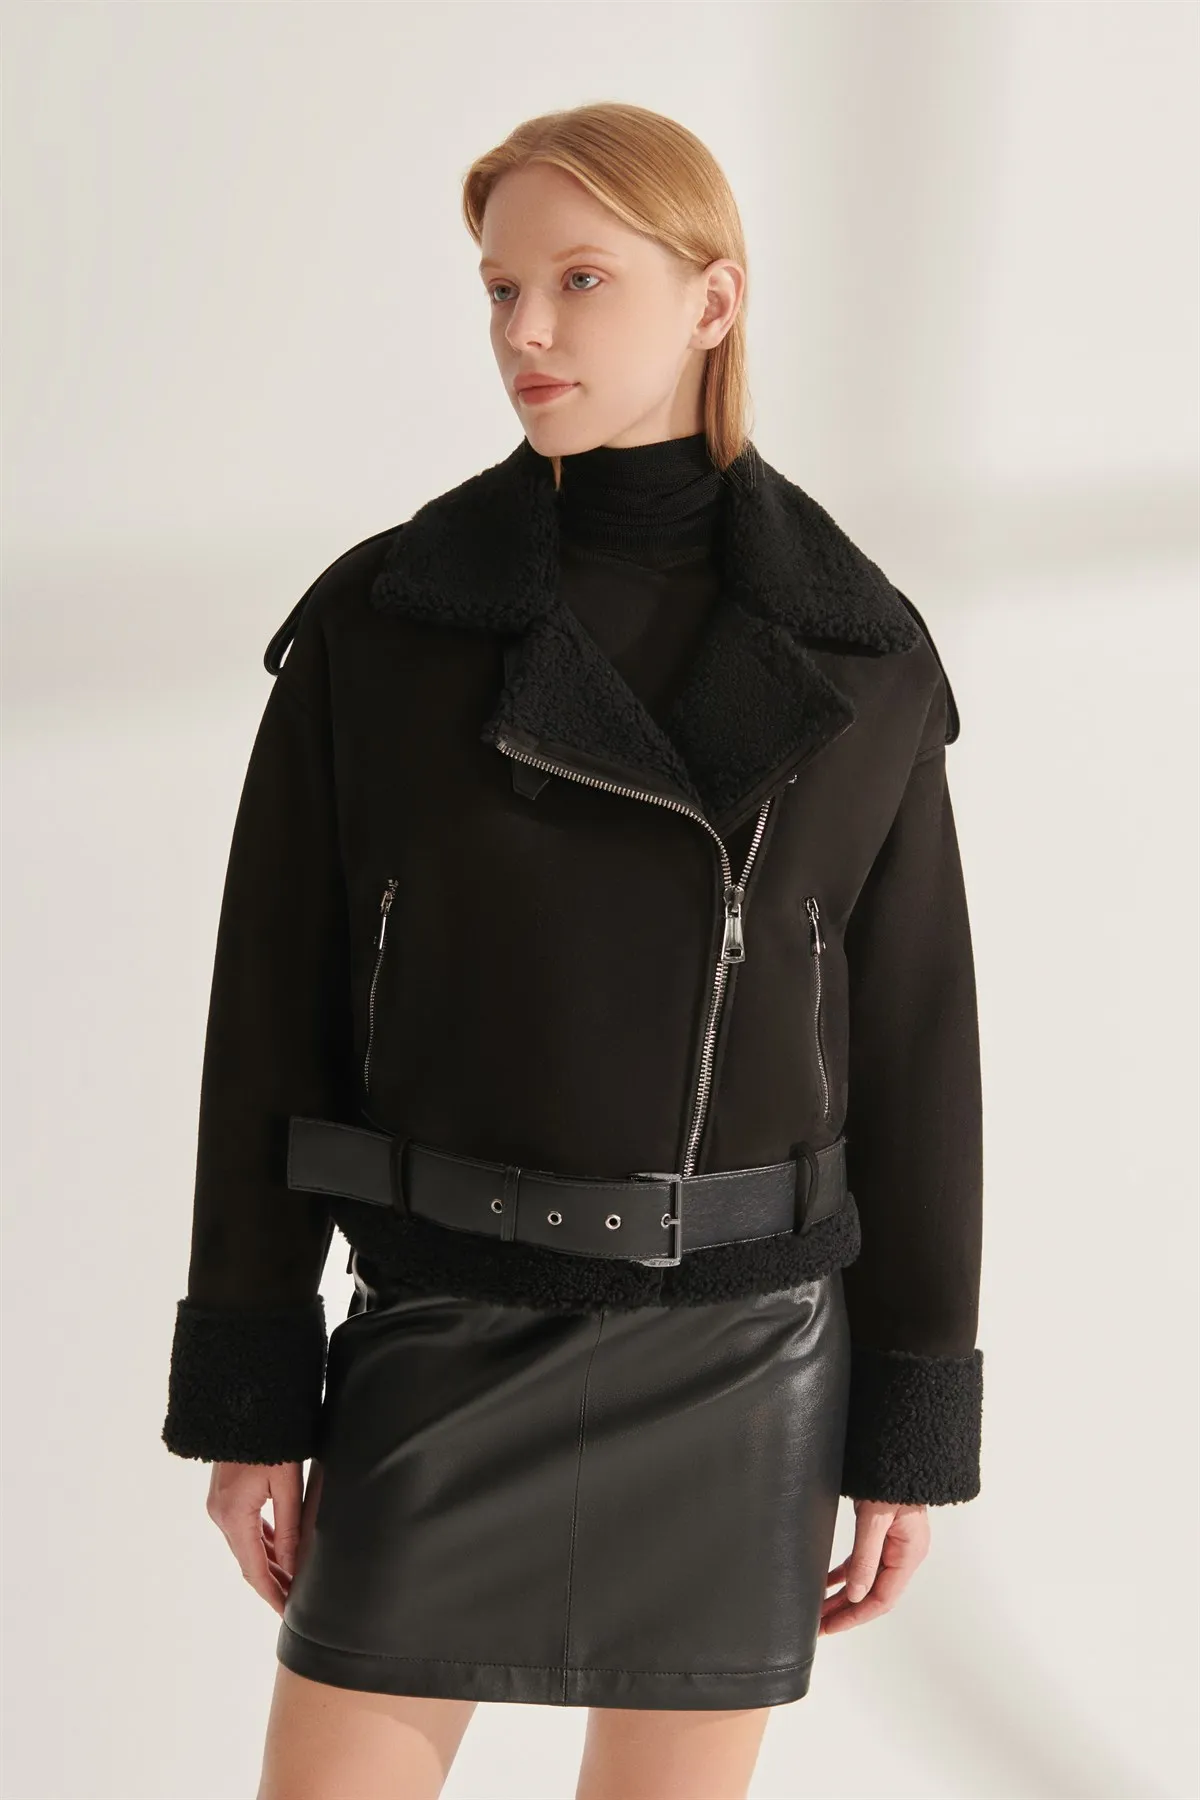 Orijinal Leather Jackets Women Black Real Fur Biker Coats Kışlık Thick Outfit Keeps Warm Waterproof Parkas New Year Fashion